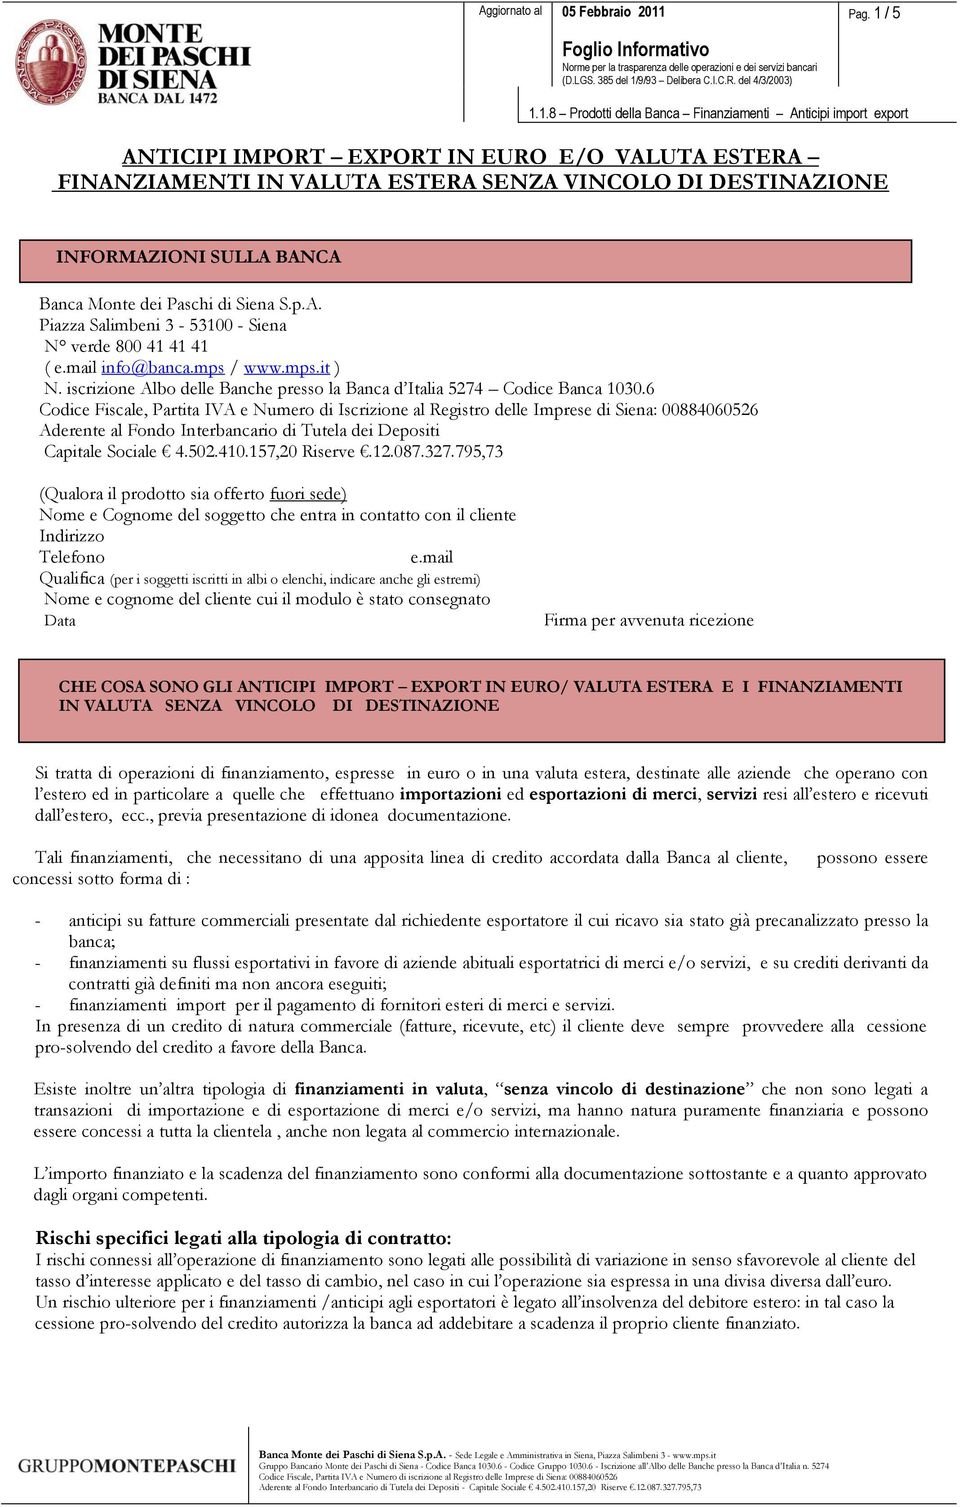 6 Codice Fiscale, Partita IVA e Numero di Iscrizione al Registro delle Imprese di Siena: 00884060526 Aderente al Fondo Interbancario di Tutela dei Depositi Capitale Sociale 4.502.410.157,20 Riserve.